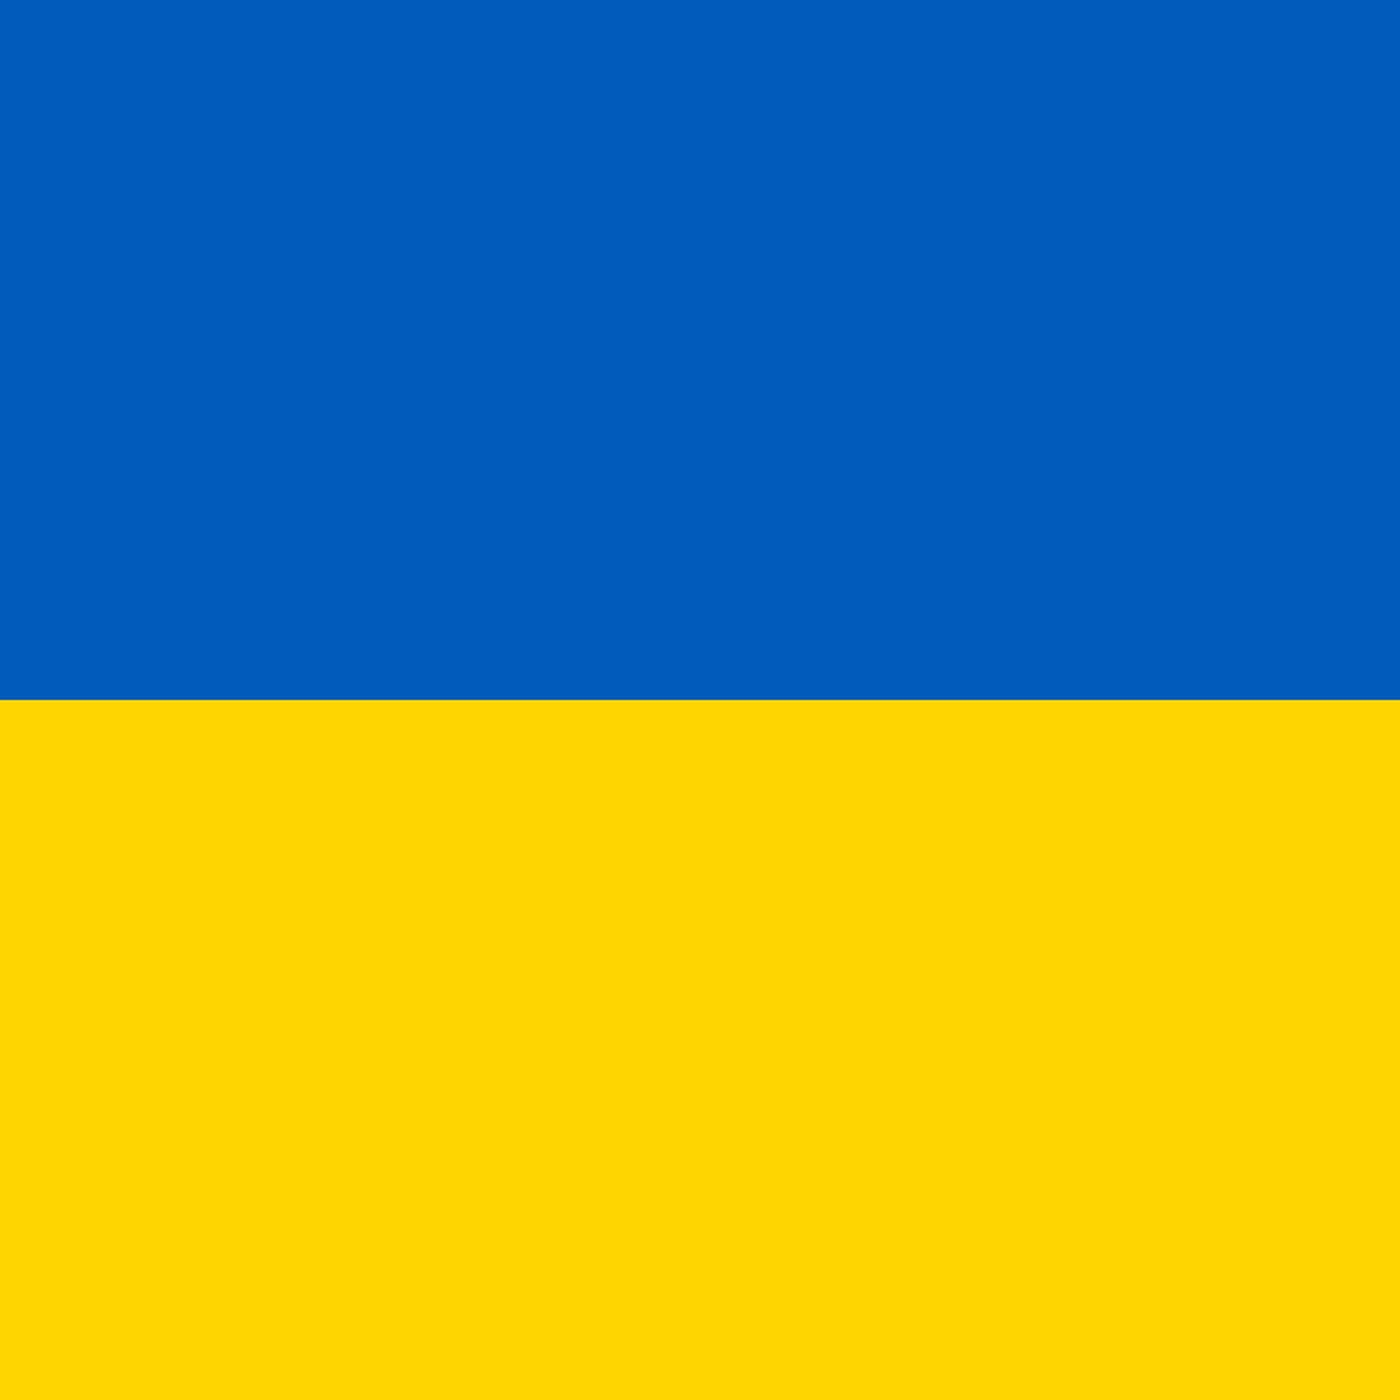 Flag_of_Ukraine_1400x1400jpg